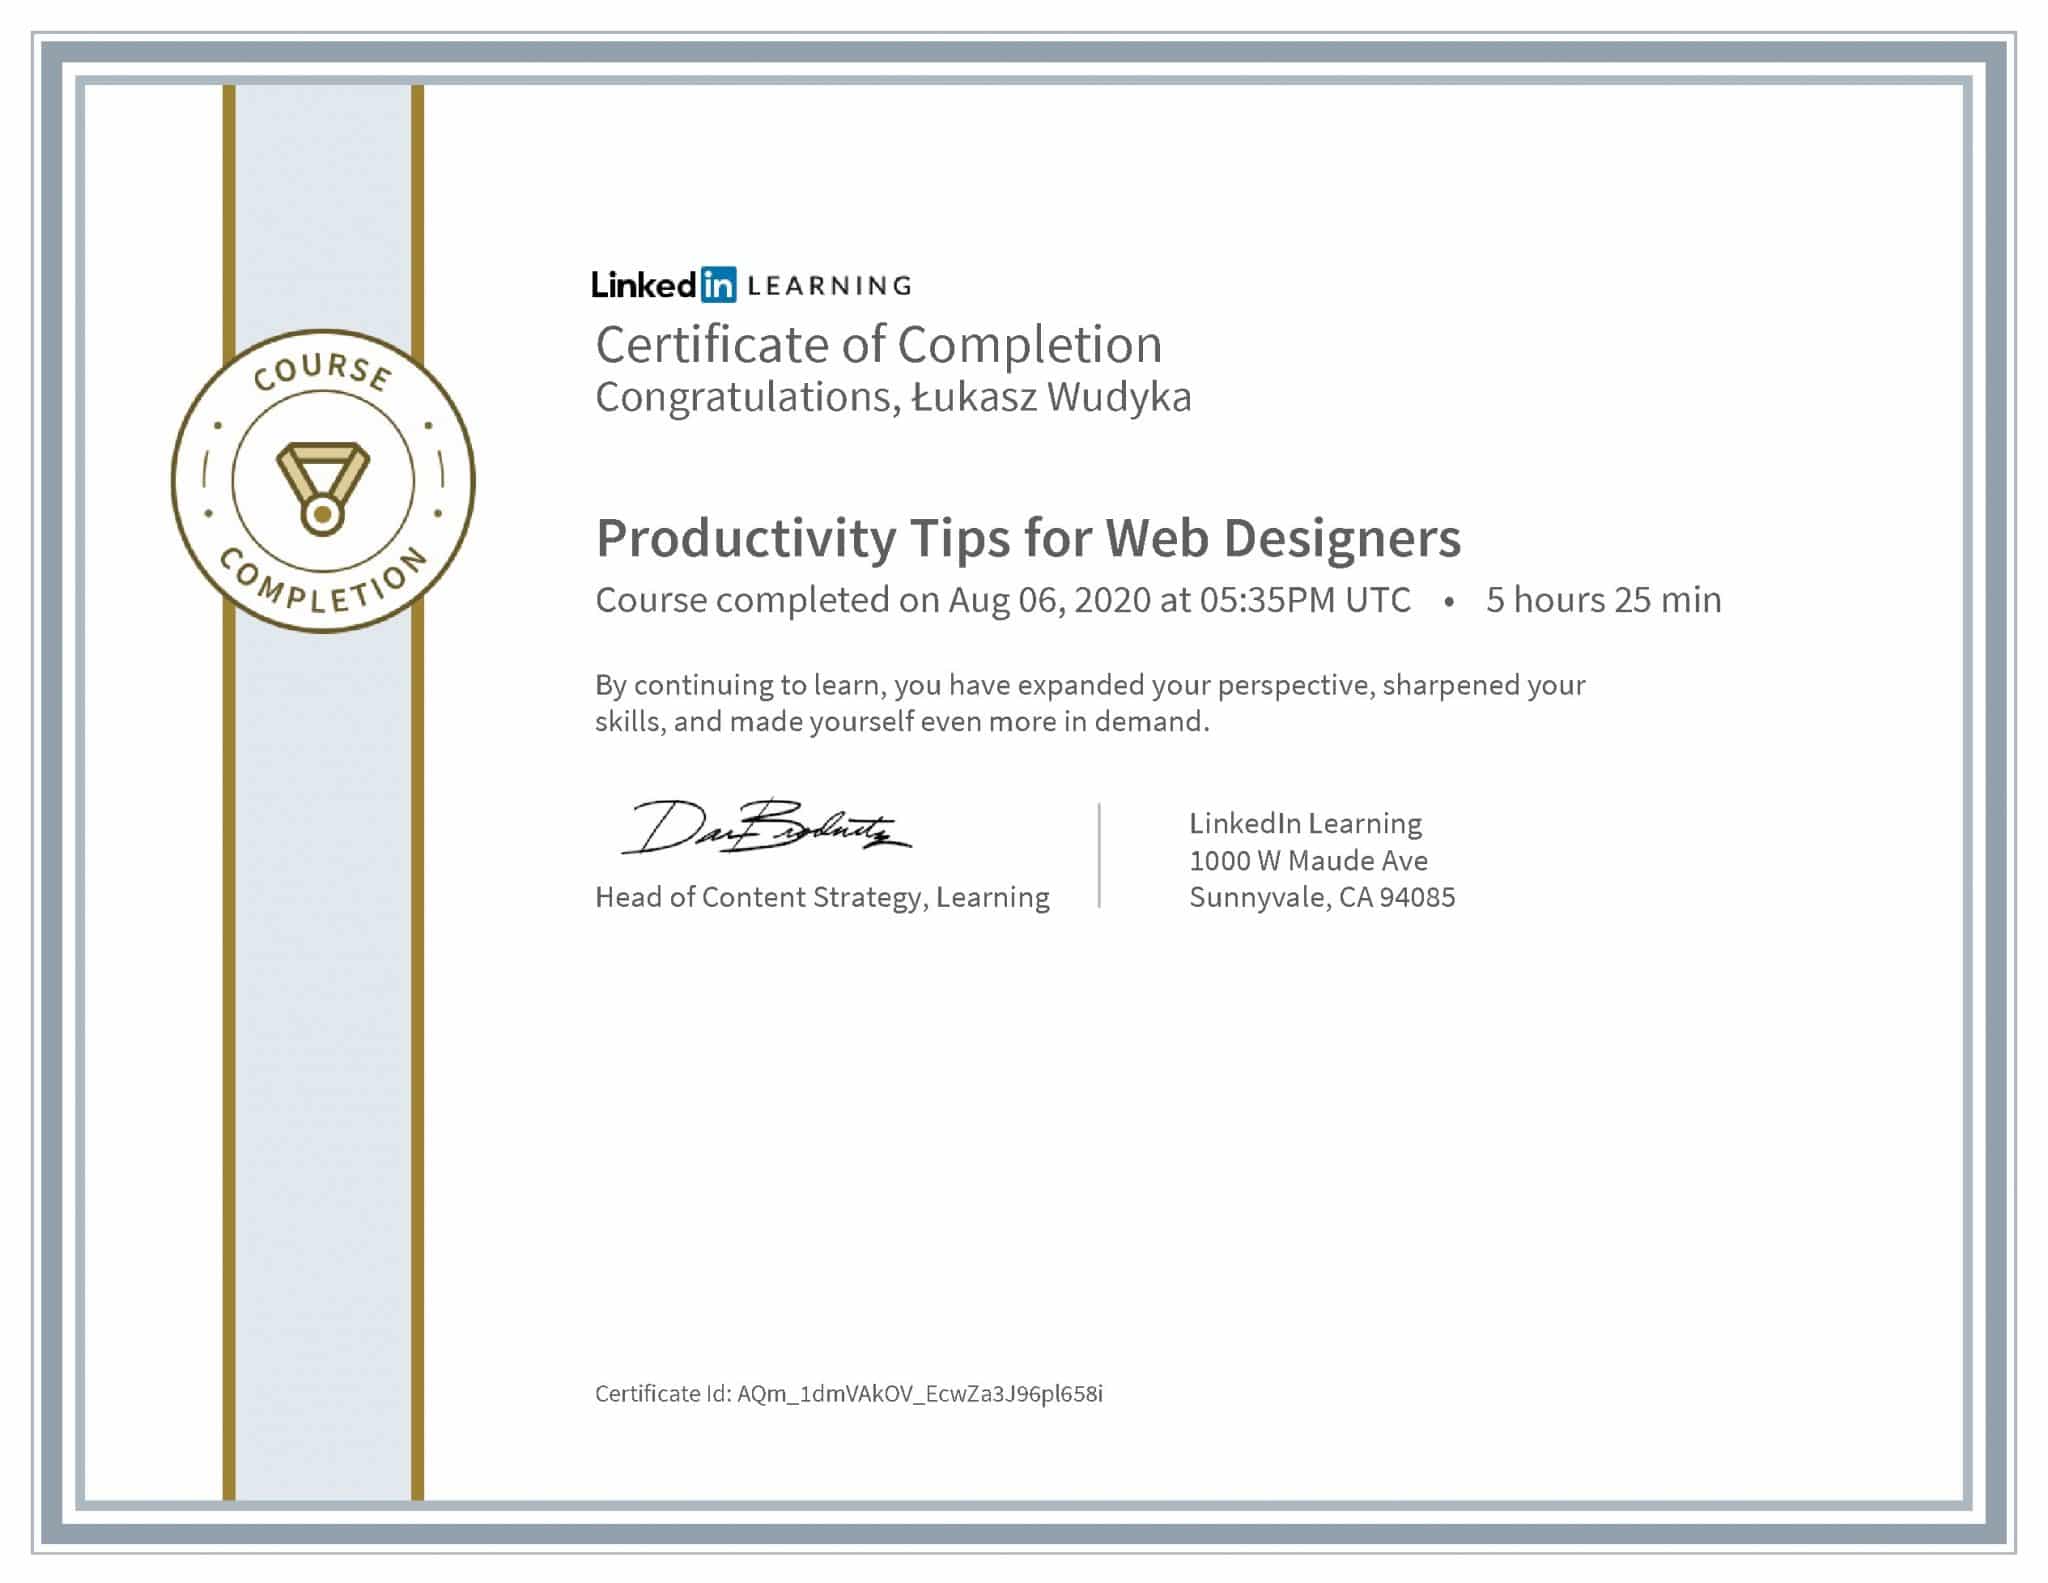 Łukasz Wudyka certyfikat LinkedIn Productivity Tips for Web Designers